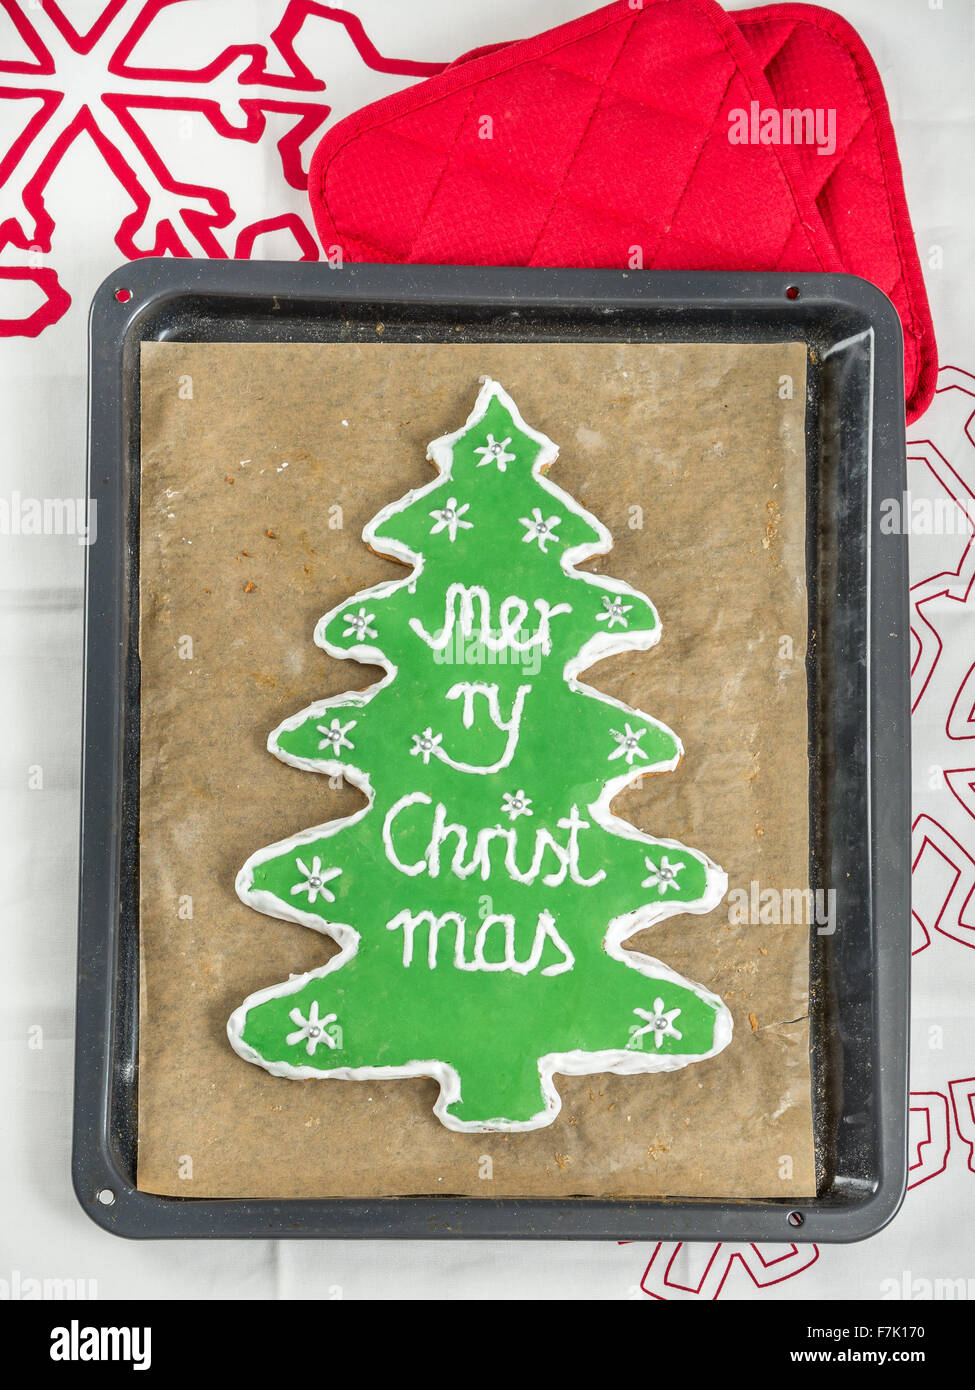 Fatti in casa a base di albero di natale-simili gingerbread cookie con glassa verde e Buon Natale scritta sul vassoio da forno Foto Stock